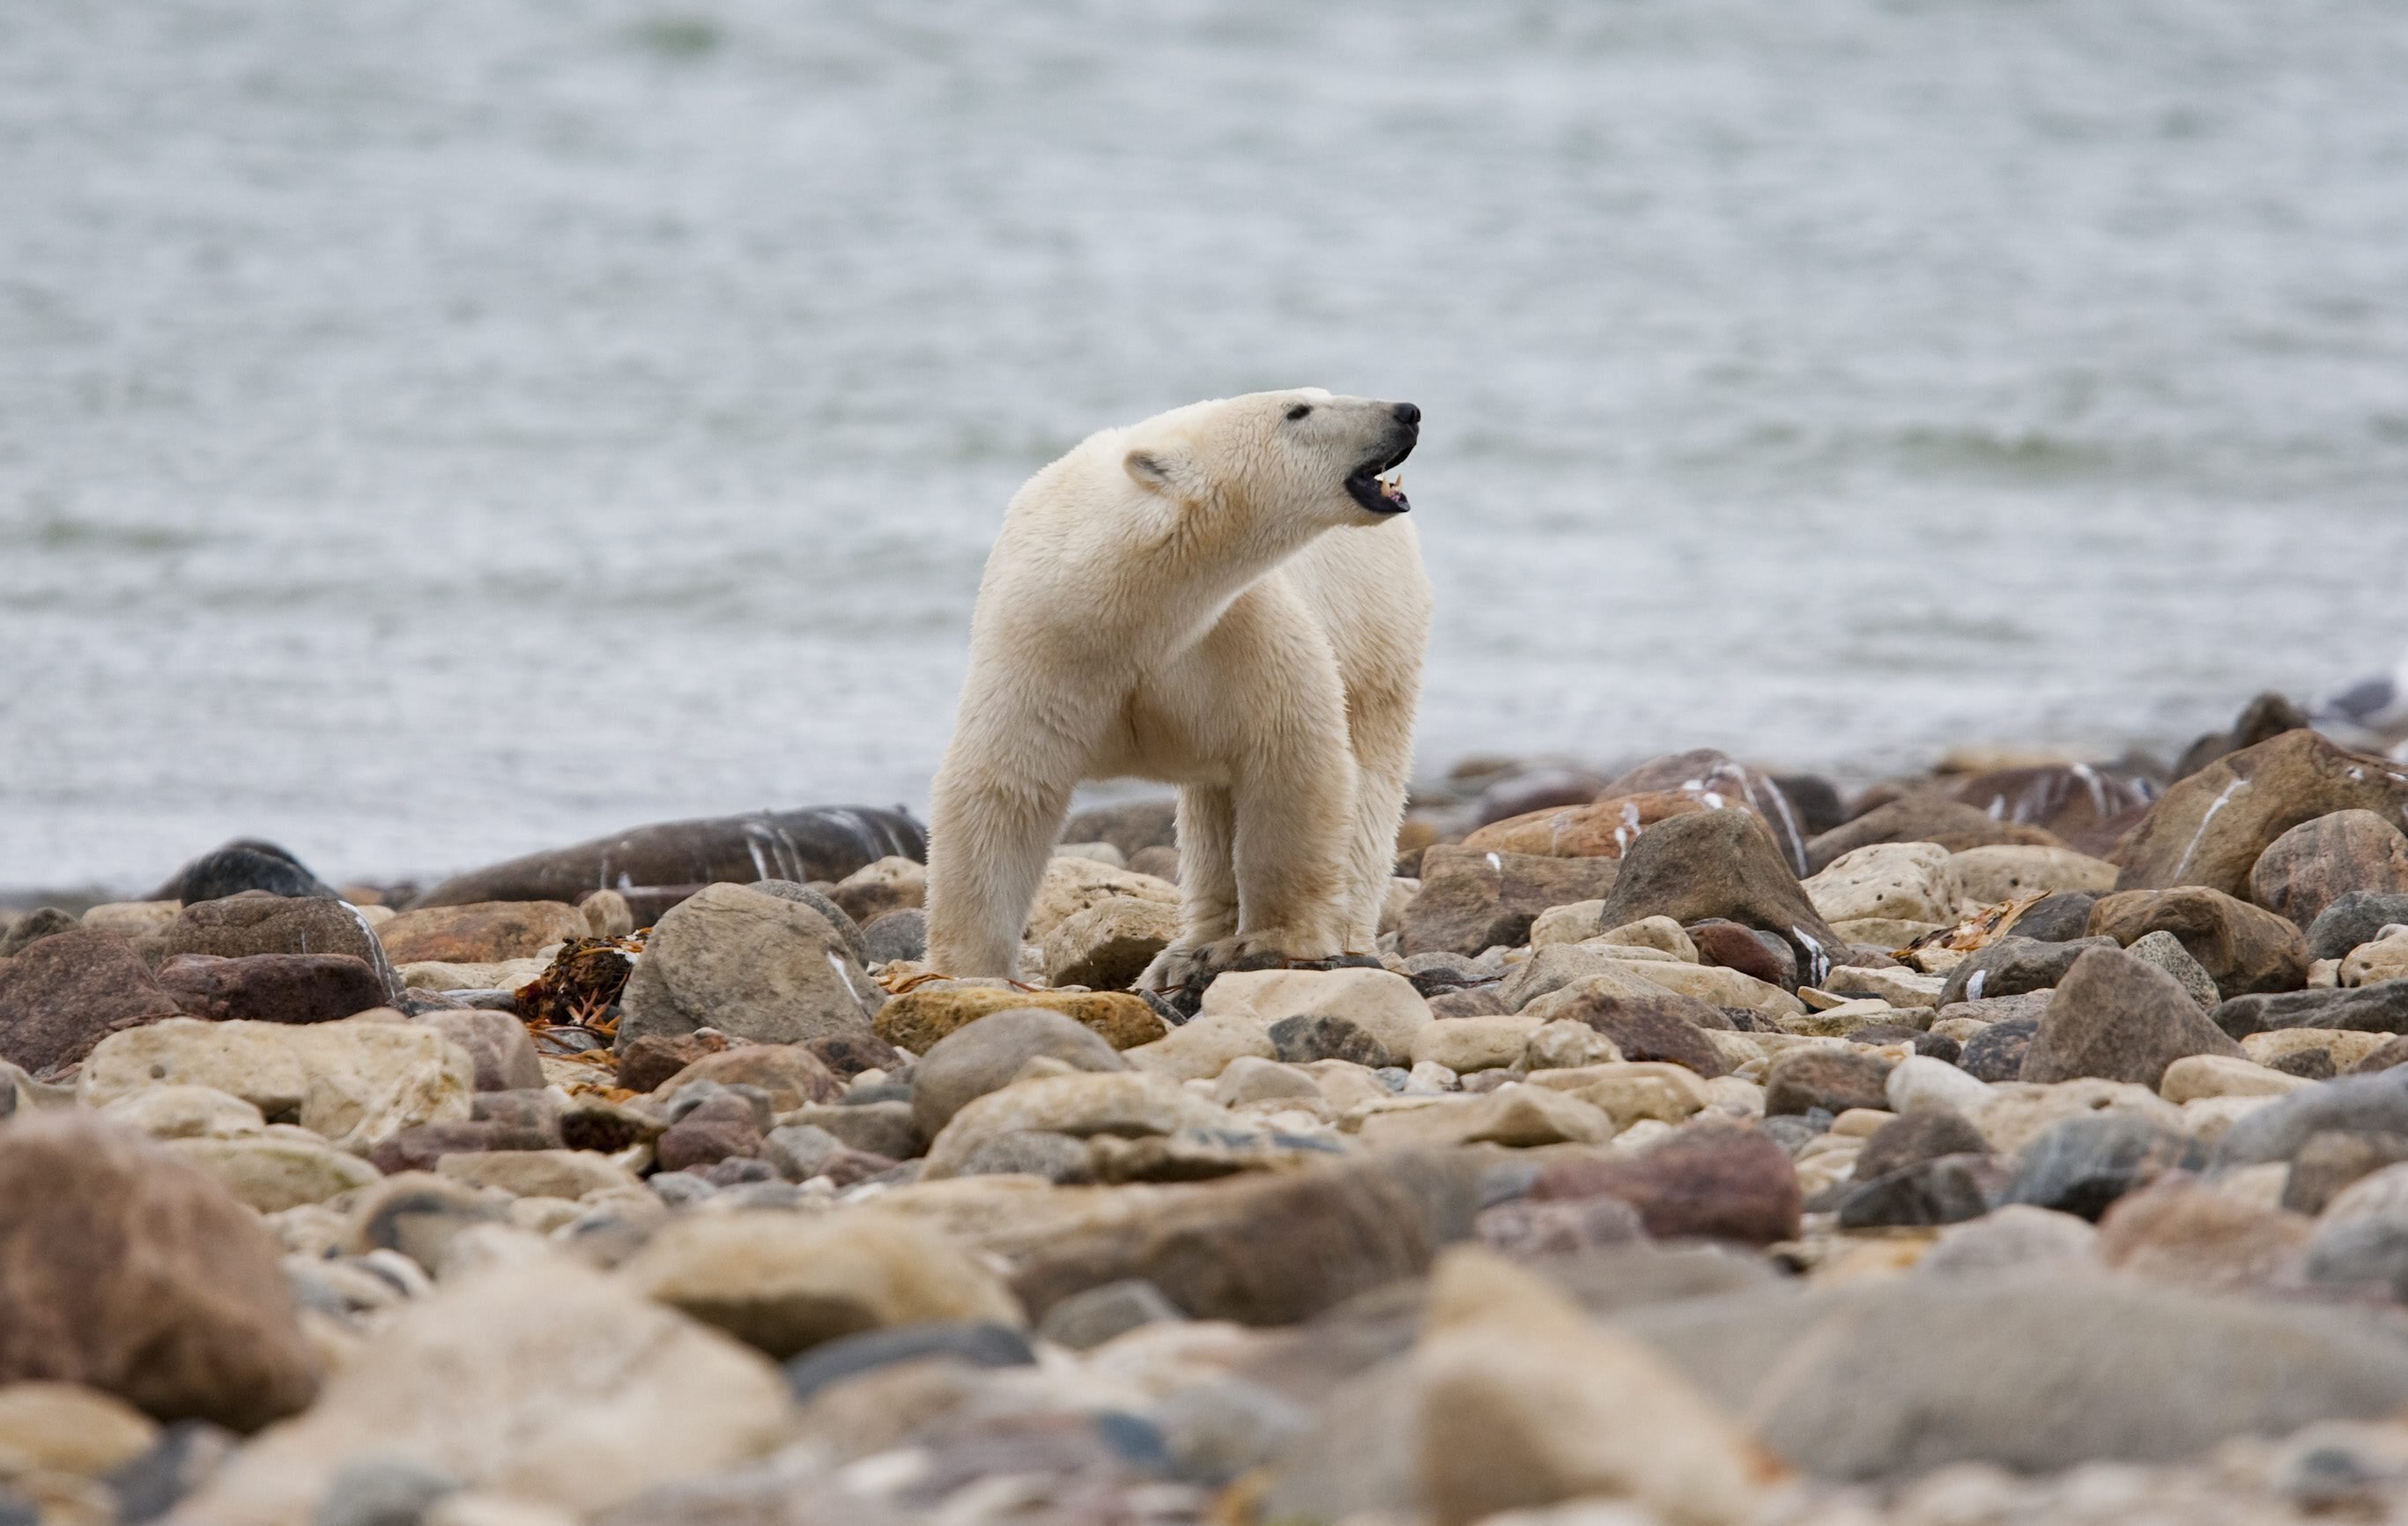 “Los informes iniciales indican que un oso polar había entrado en la comunidad y había perseguido a varios residentes”, indicó la policía. “El oso atacó mortalmente a una mujer adulta y a un varón juvenil”. (Sean Kilpatrick/The Canadian Press vía AP, archivo)